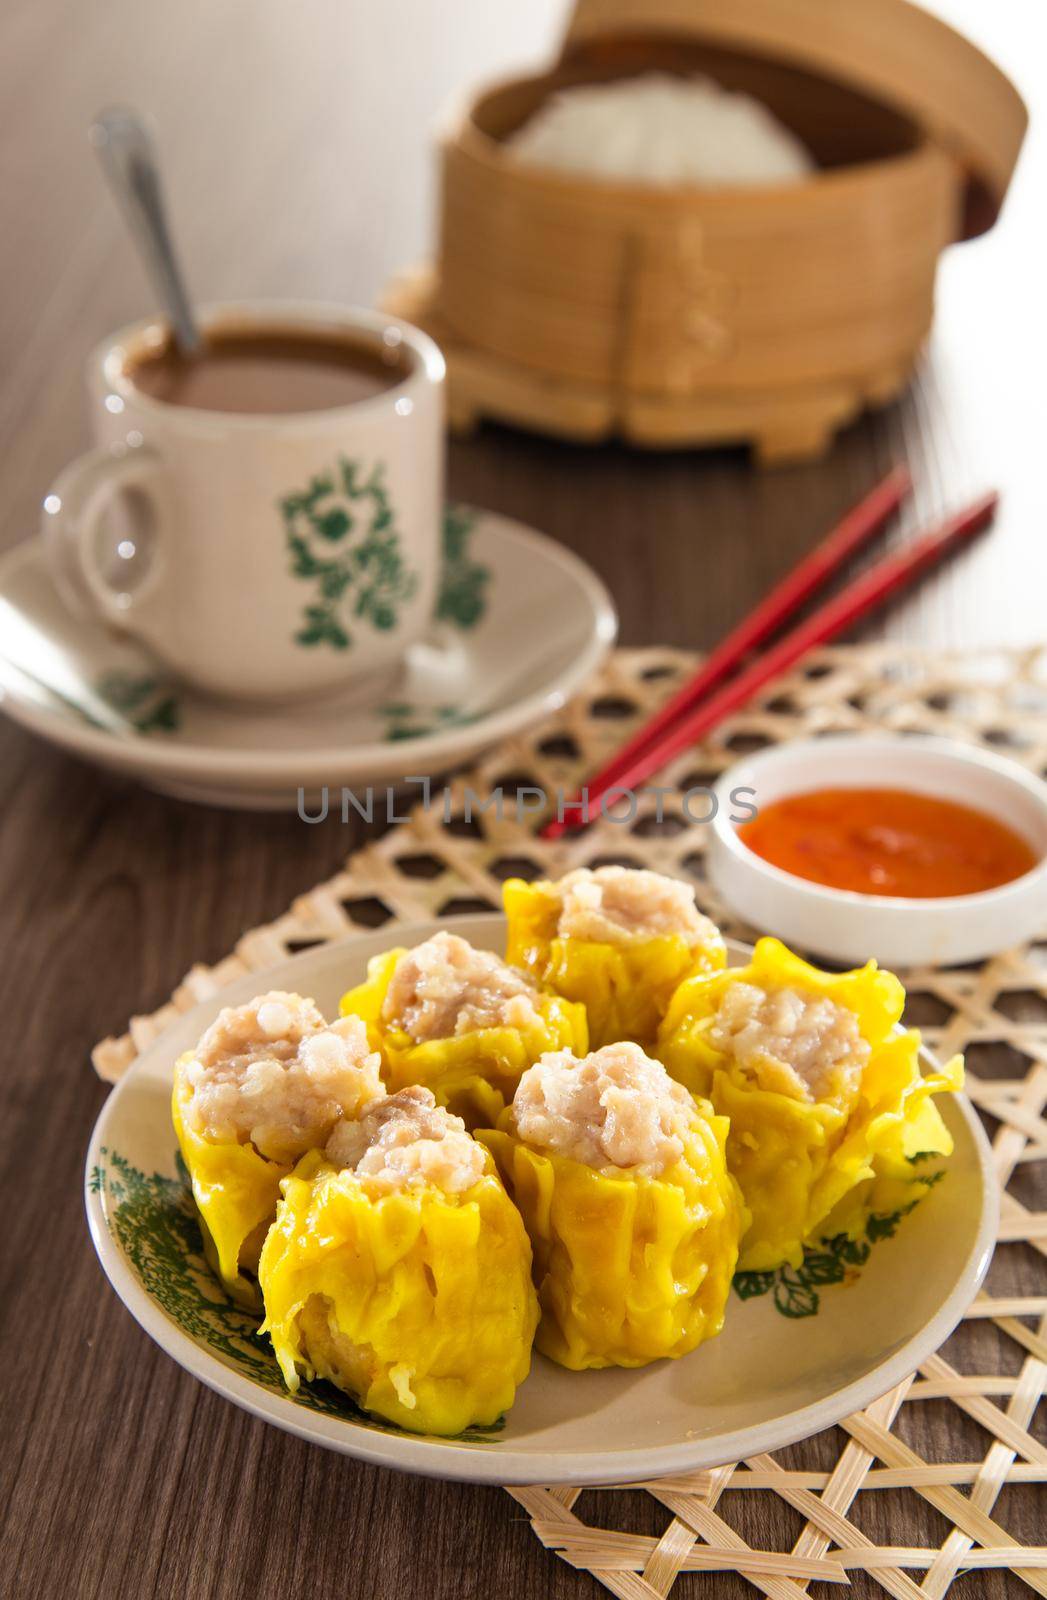 Siu Mai - Chinese steamed pork dumplings in bamboo steamers. Dim Sum by tehcheesiong